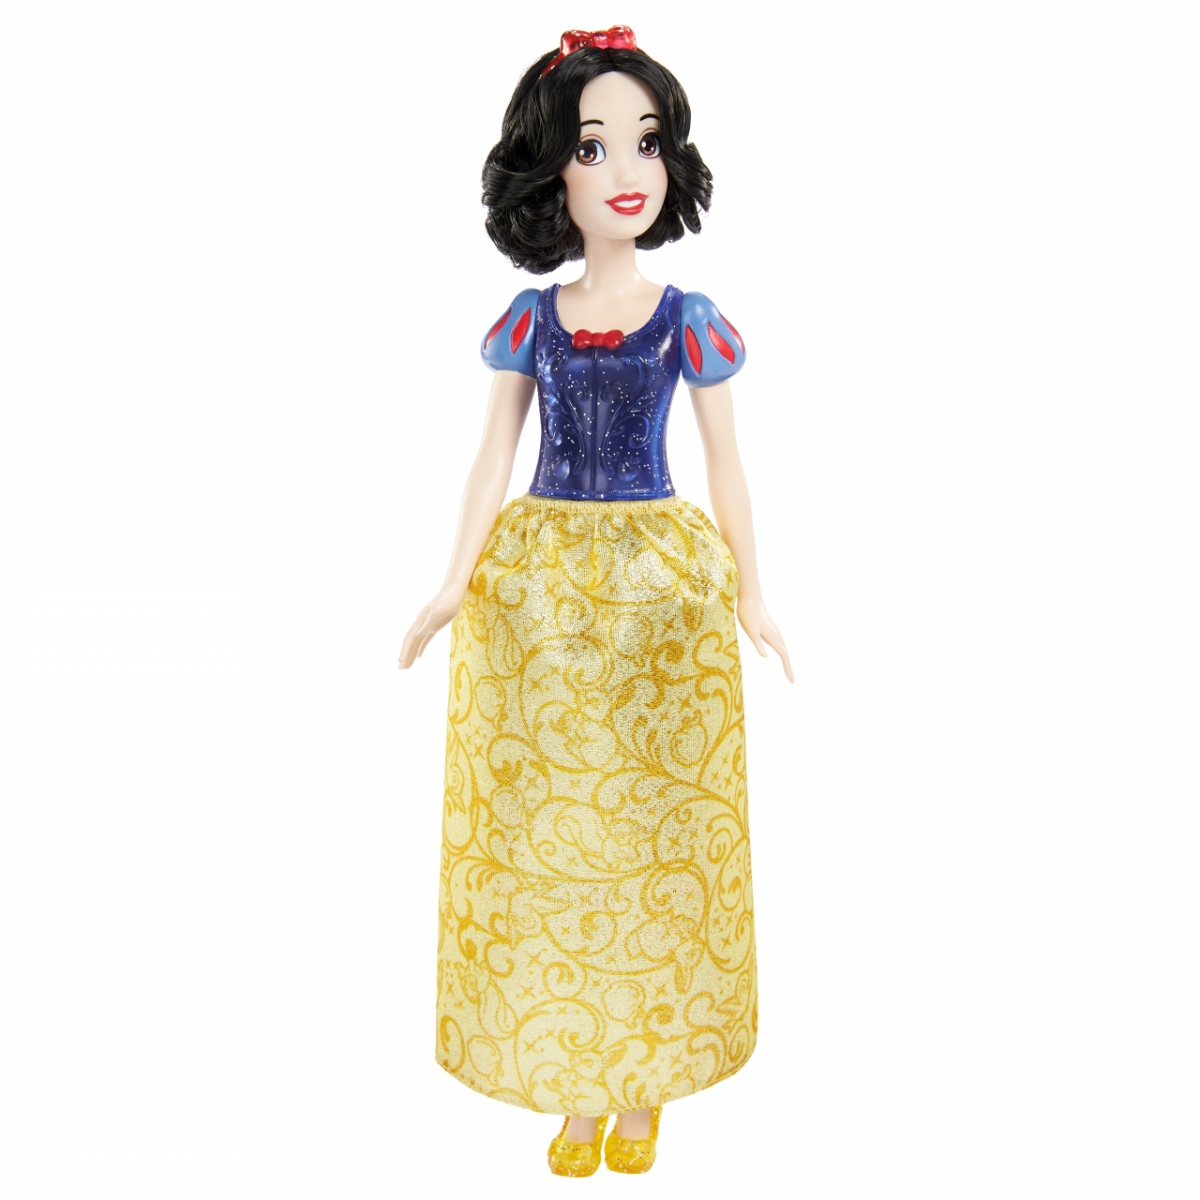 Disney Princess Fashion Core Doll Asst. Snow White Lelle HLW08